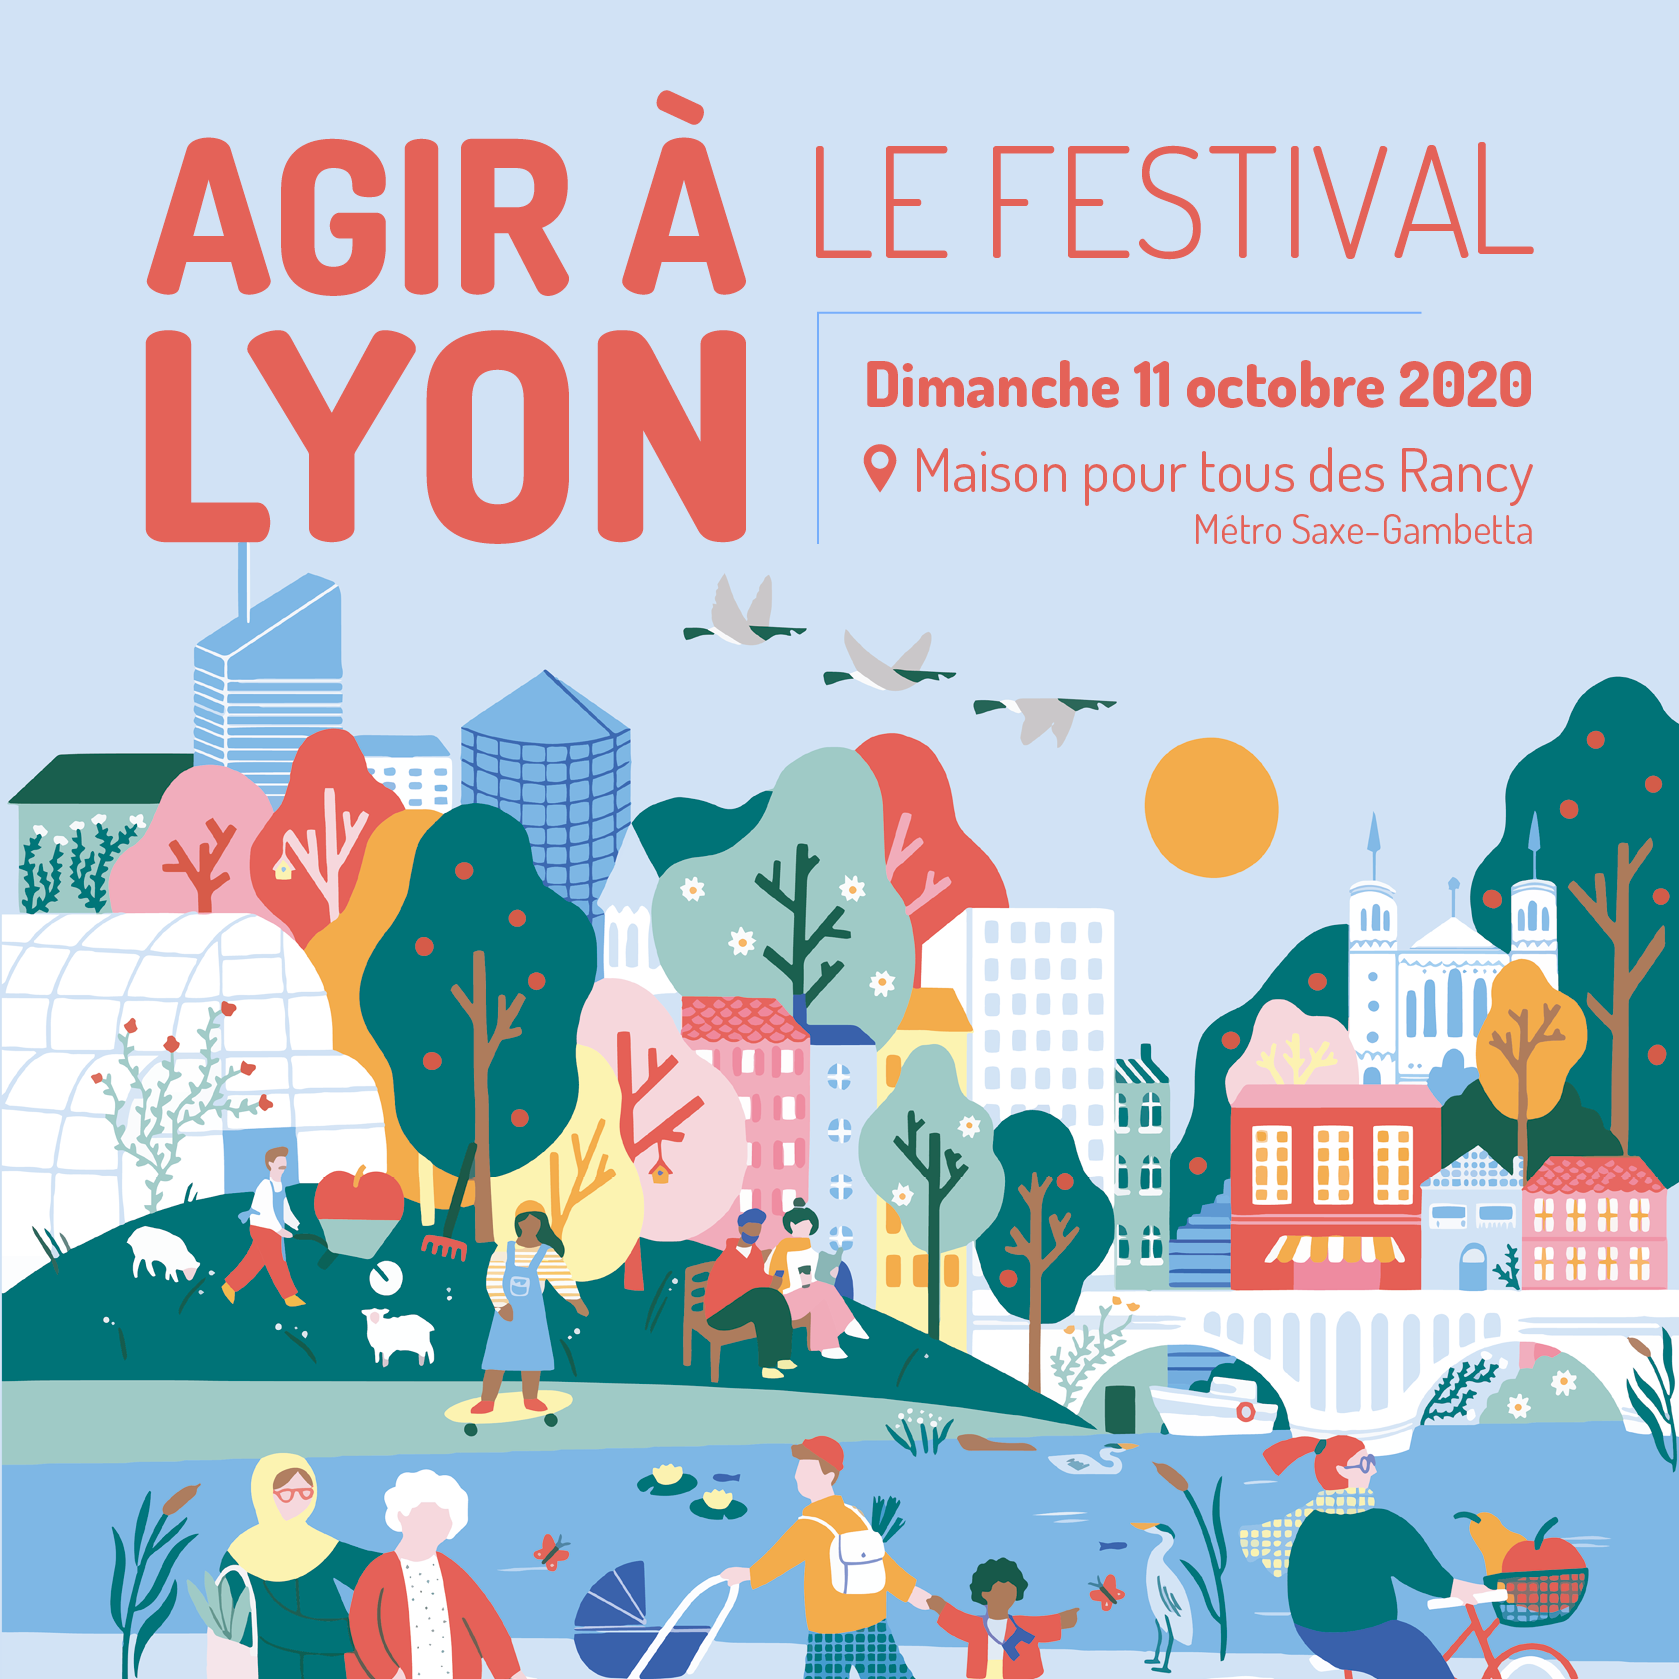 Le festival “Agir à Lyon” revient à la Maison pour tous des Rancy